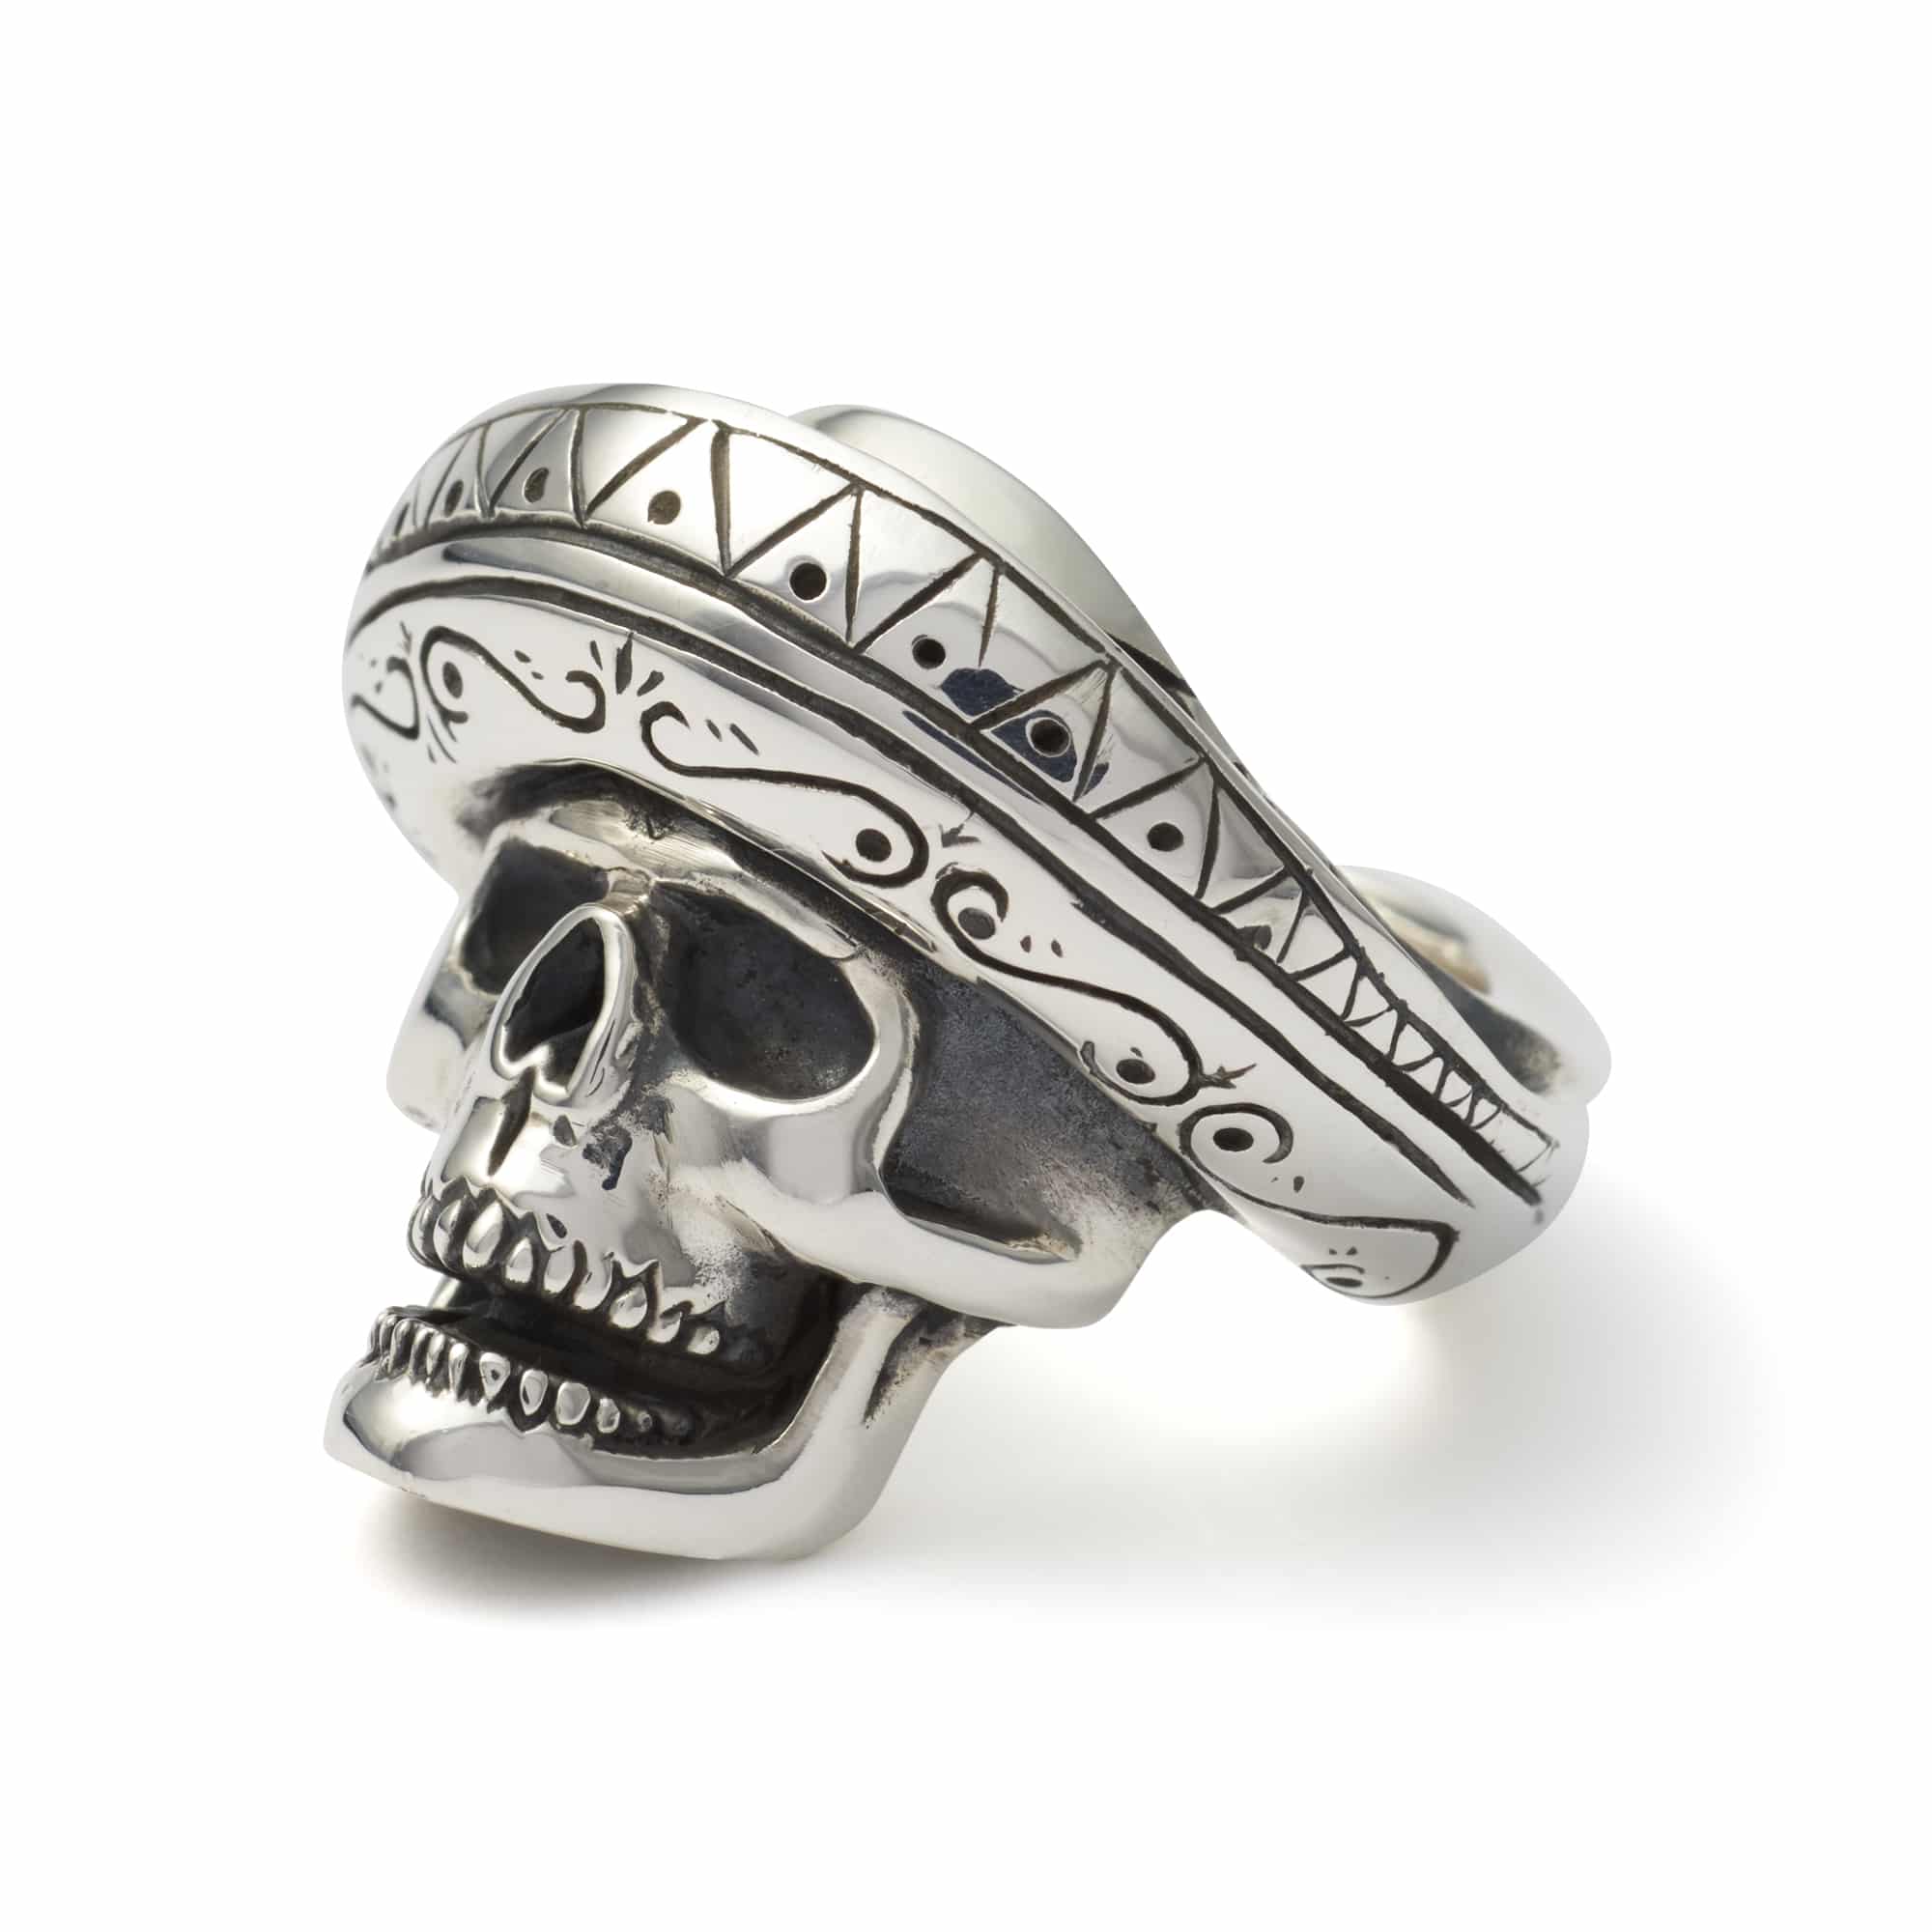 the skull ring